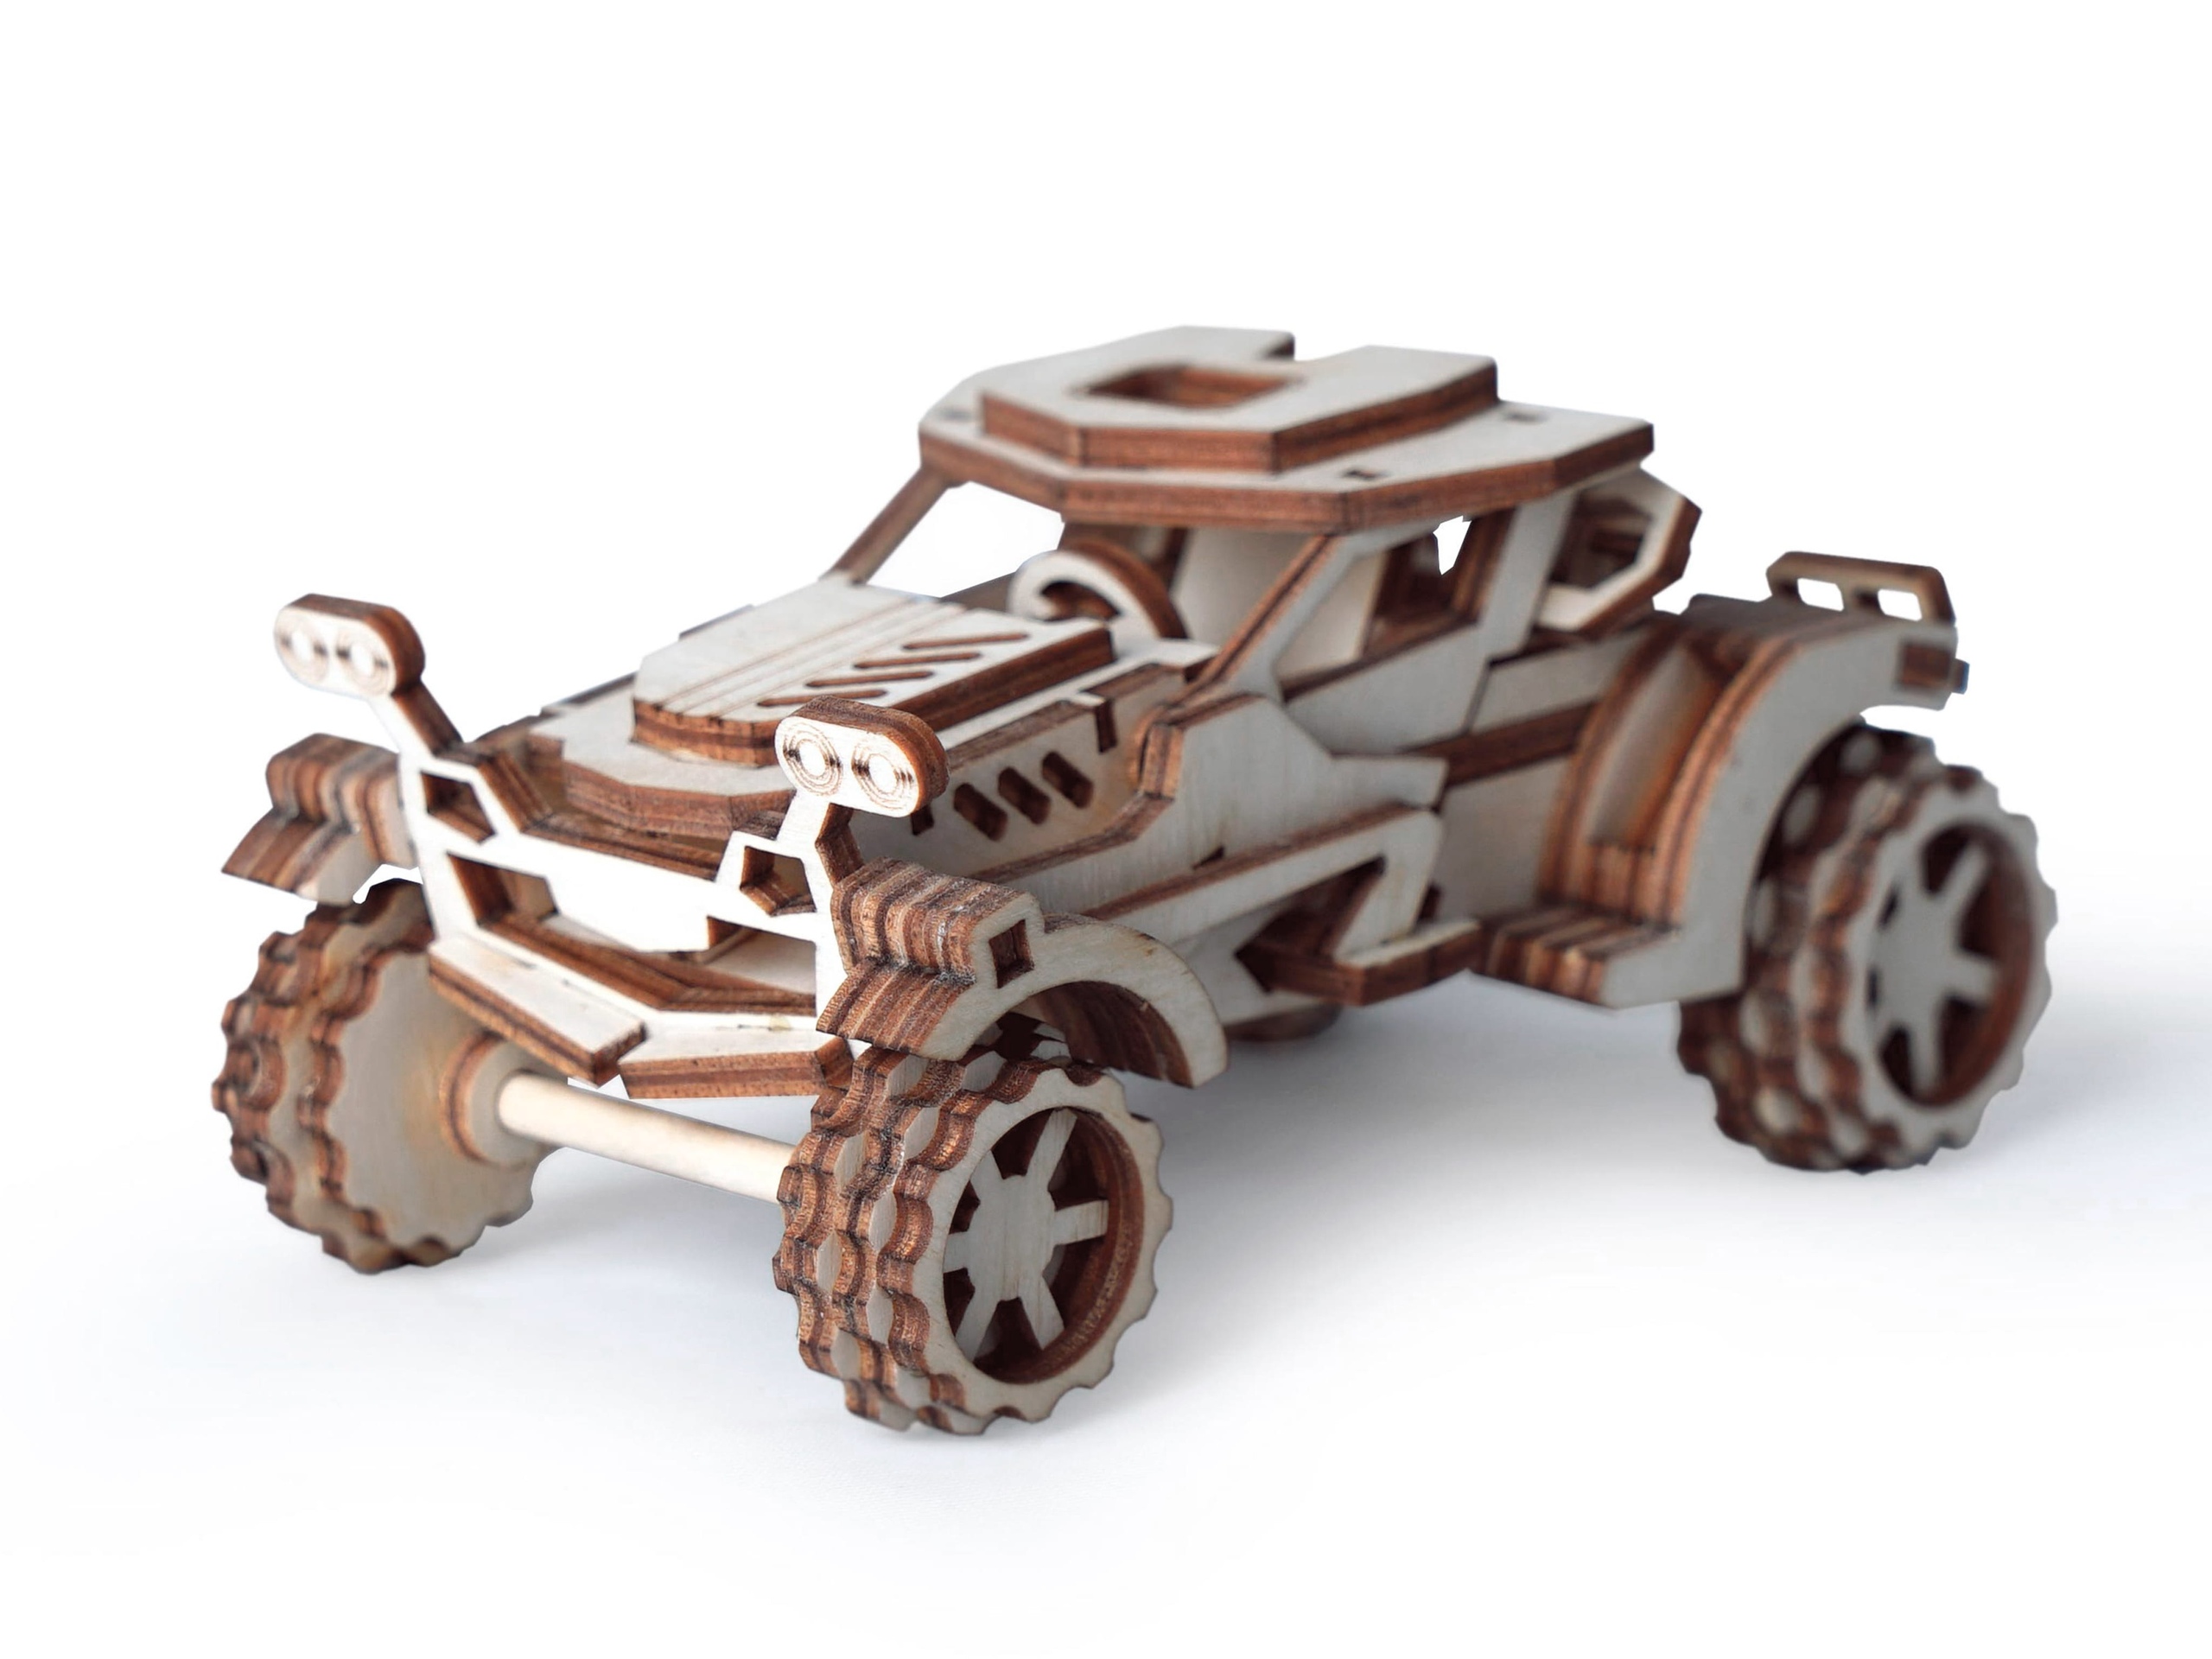 نموذج سيارة لعبة خشبية برج العقرب مقطوع بالليزر